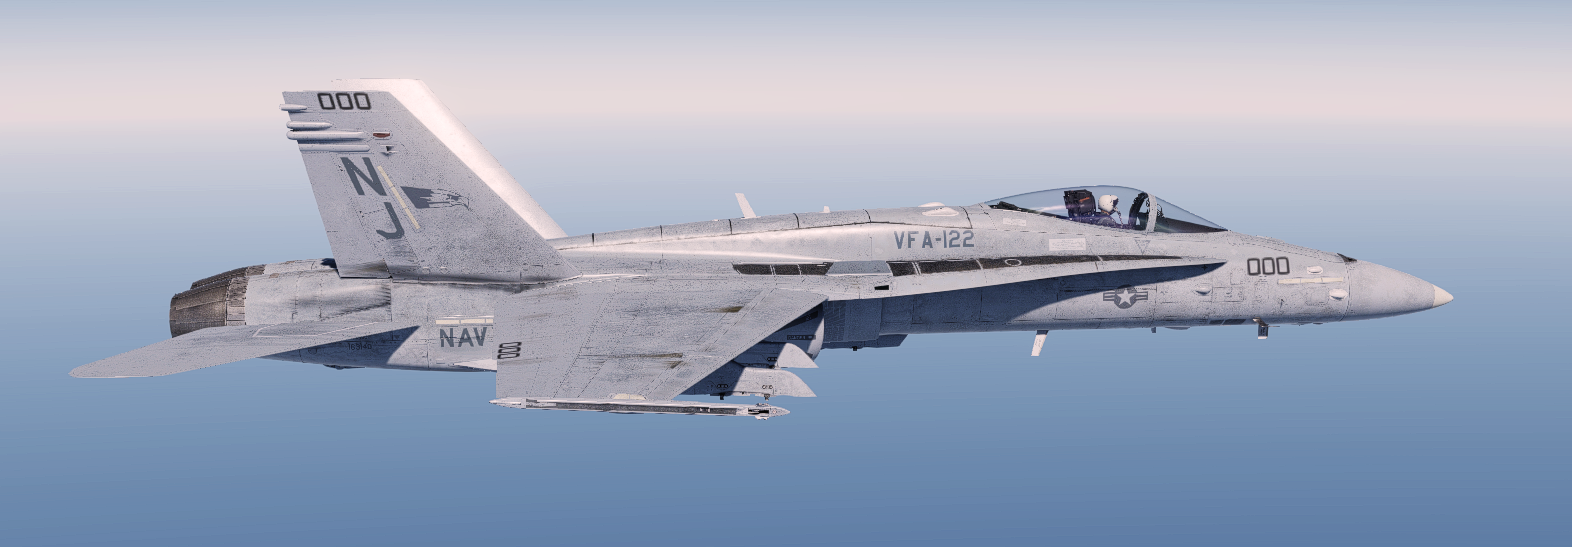 VFA-122 Flying Eagles